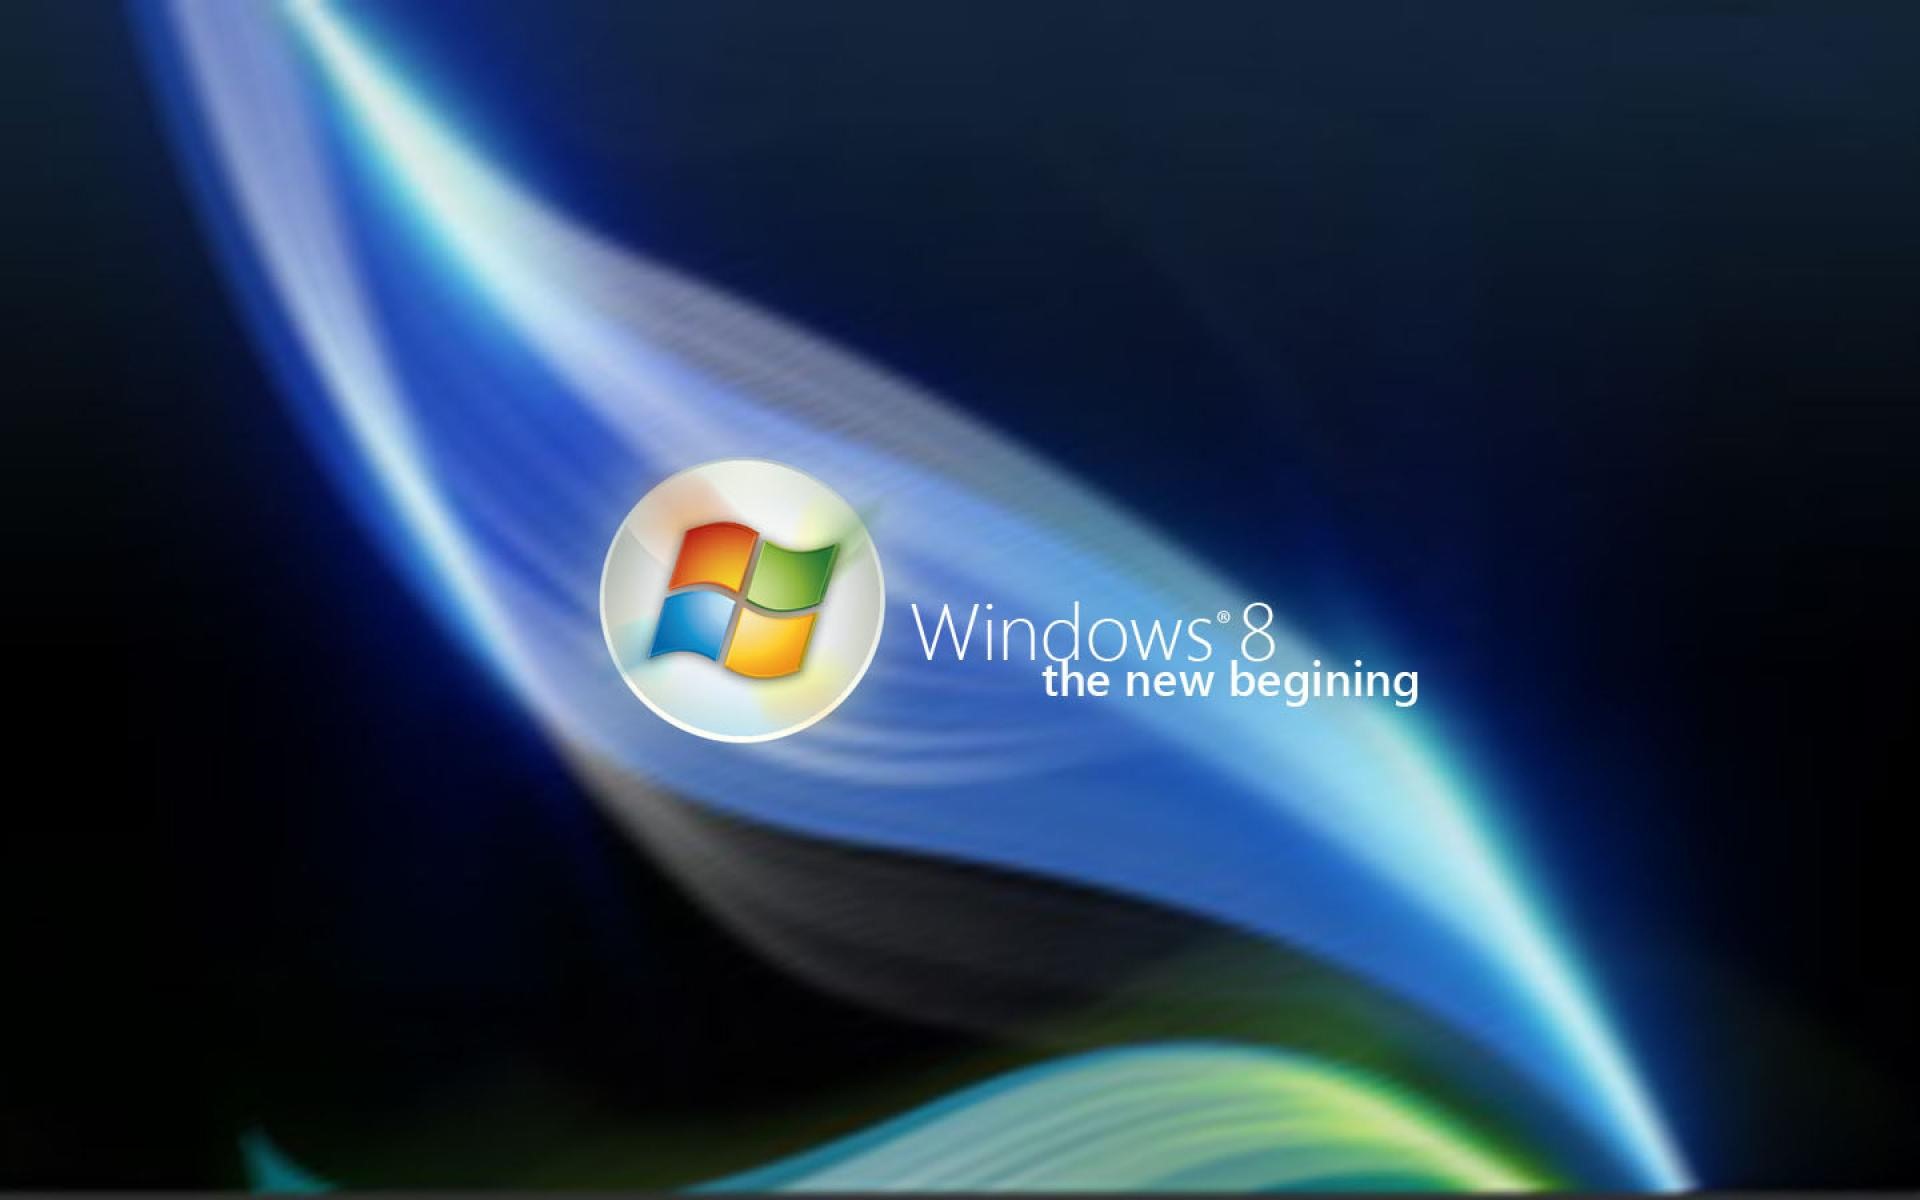 Windows 8 theme wallpaper (2) #10 - 1920x1200